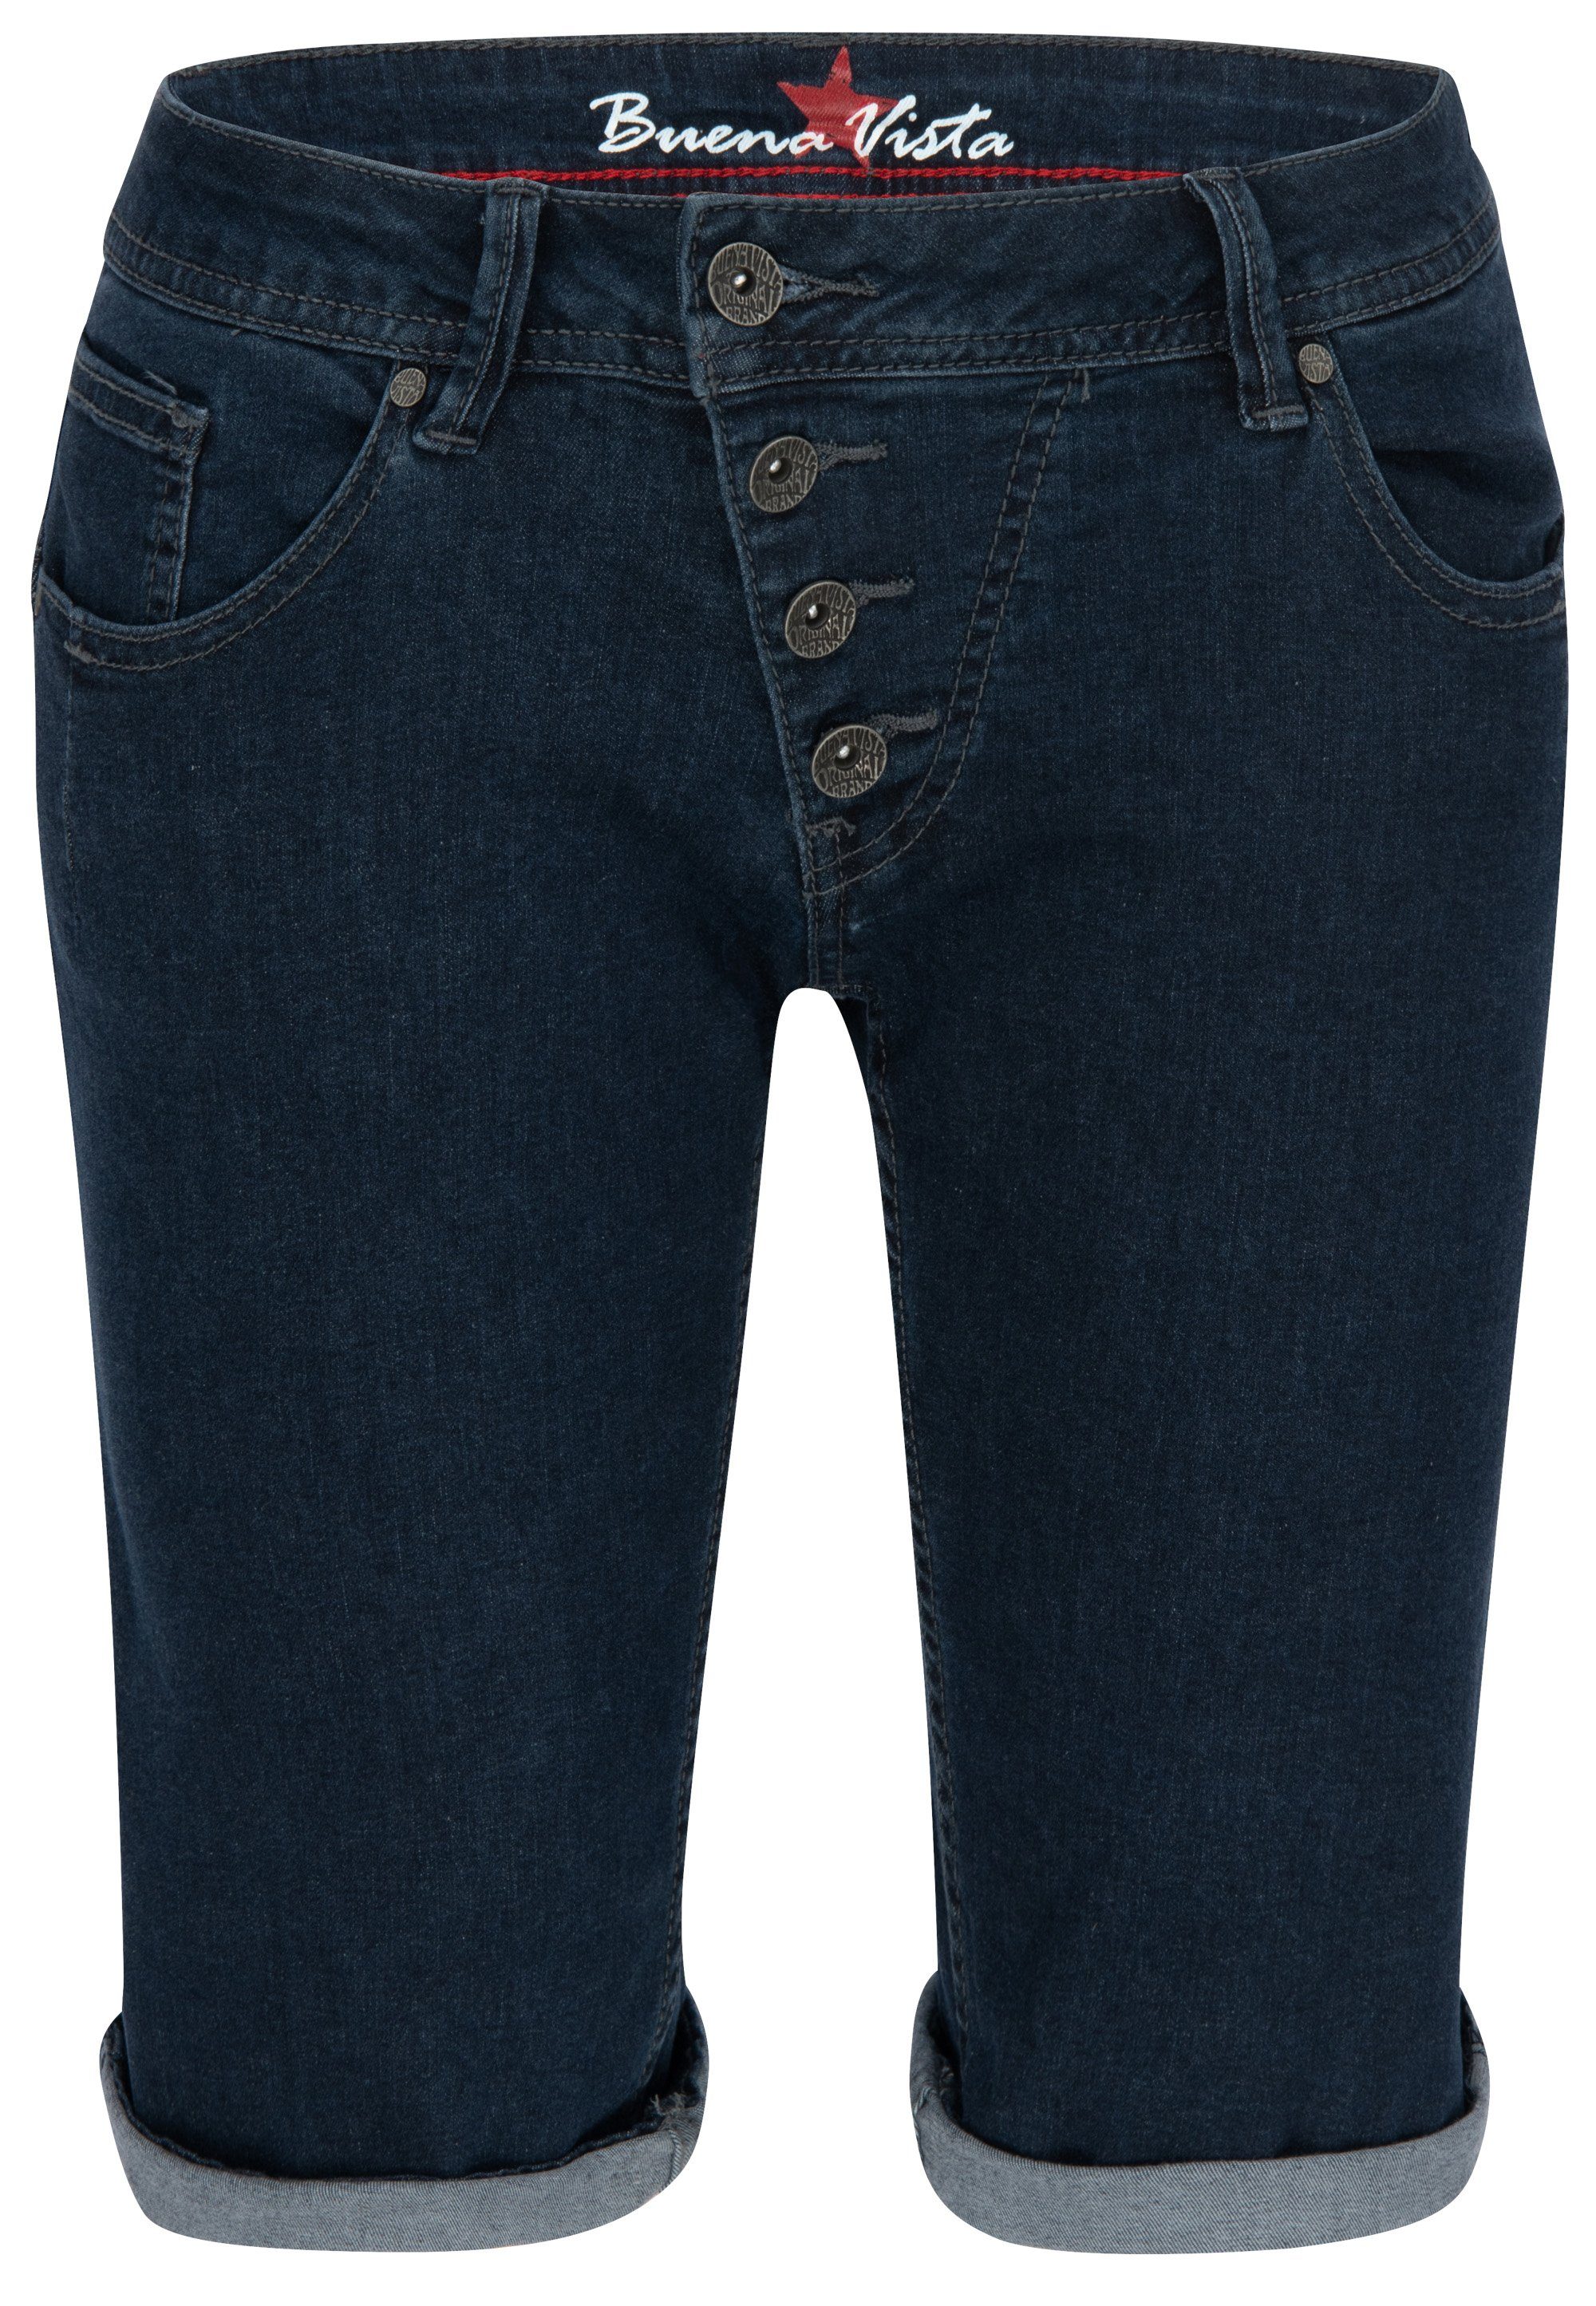 BUENA Denim SHORT MALIBU Stretch-Jeans - Vista 212.1933 2104 blue VISTA Stretch J5025 raw Buena